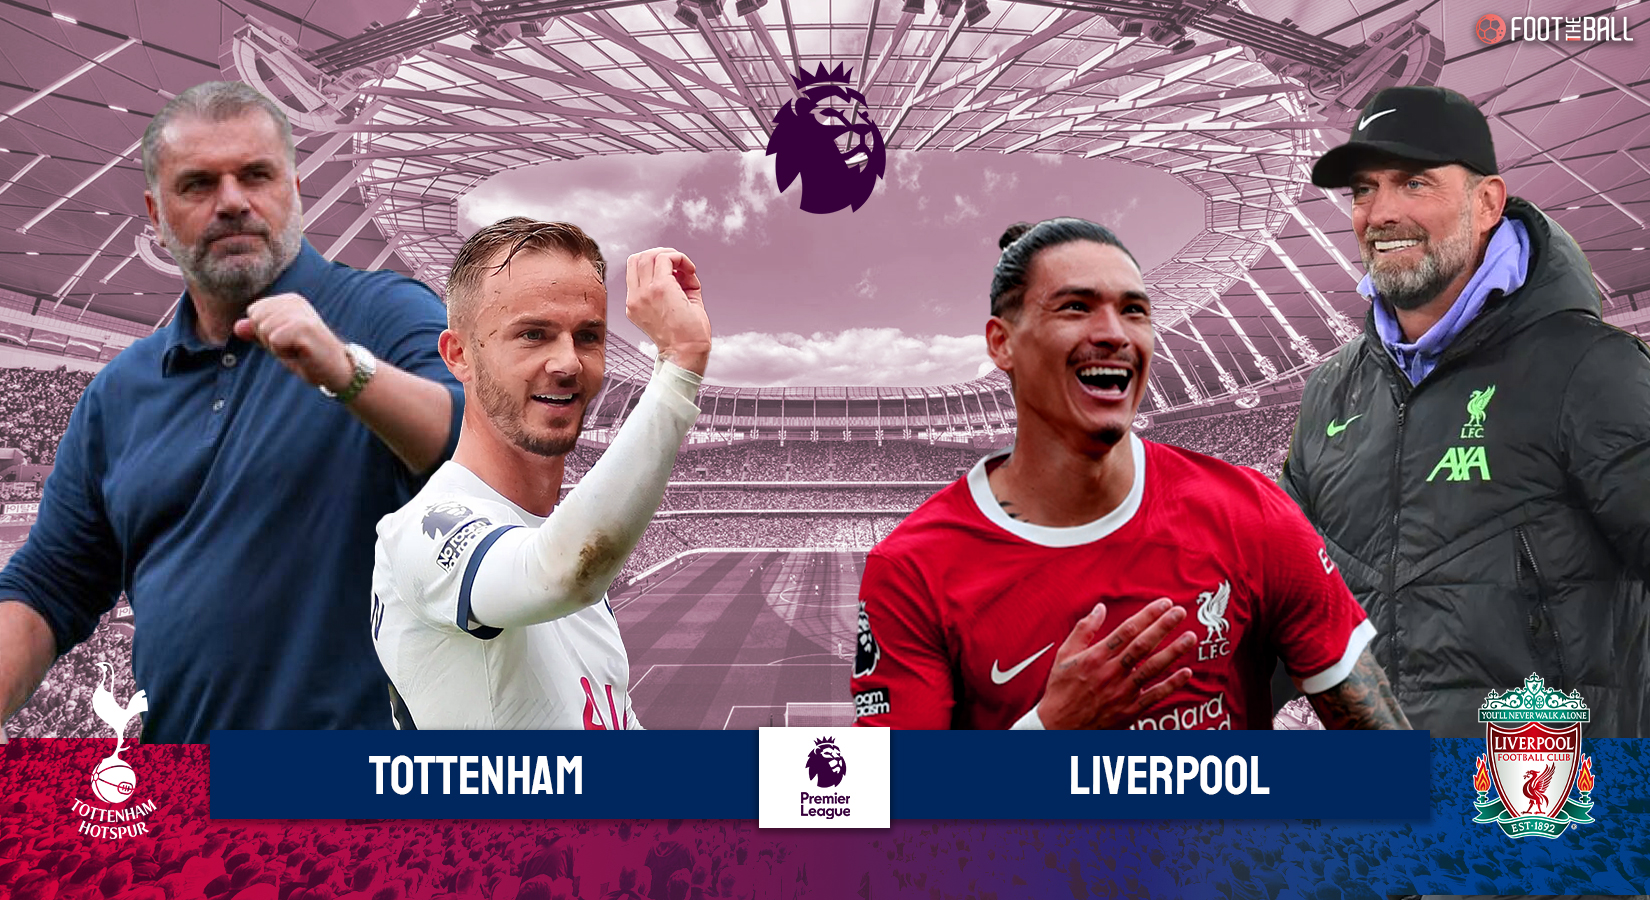 Premier League Preview: Tottenham vs Liverpool